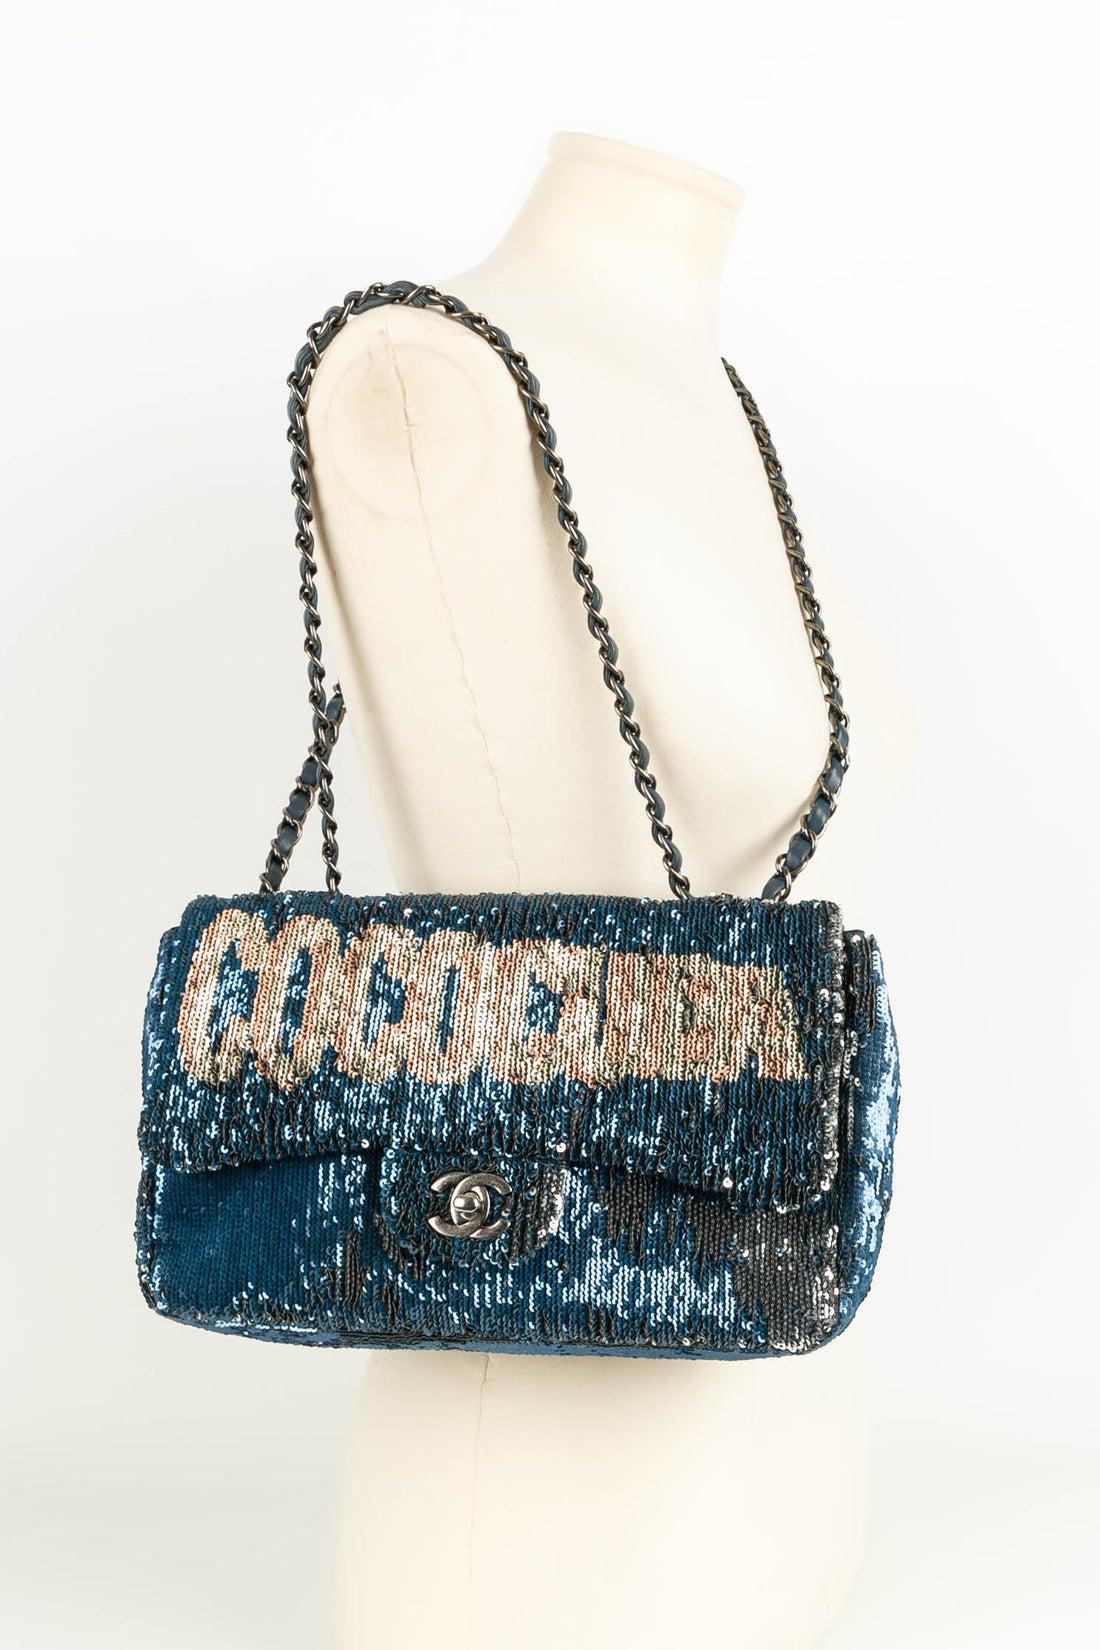 Chanel Blue Leather Bag Paris-Cuba, 2017 For Sale 10